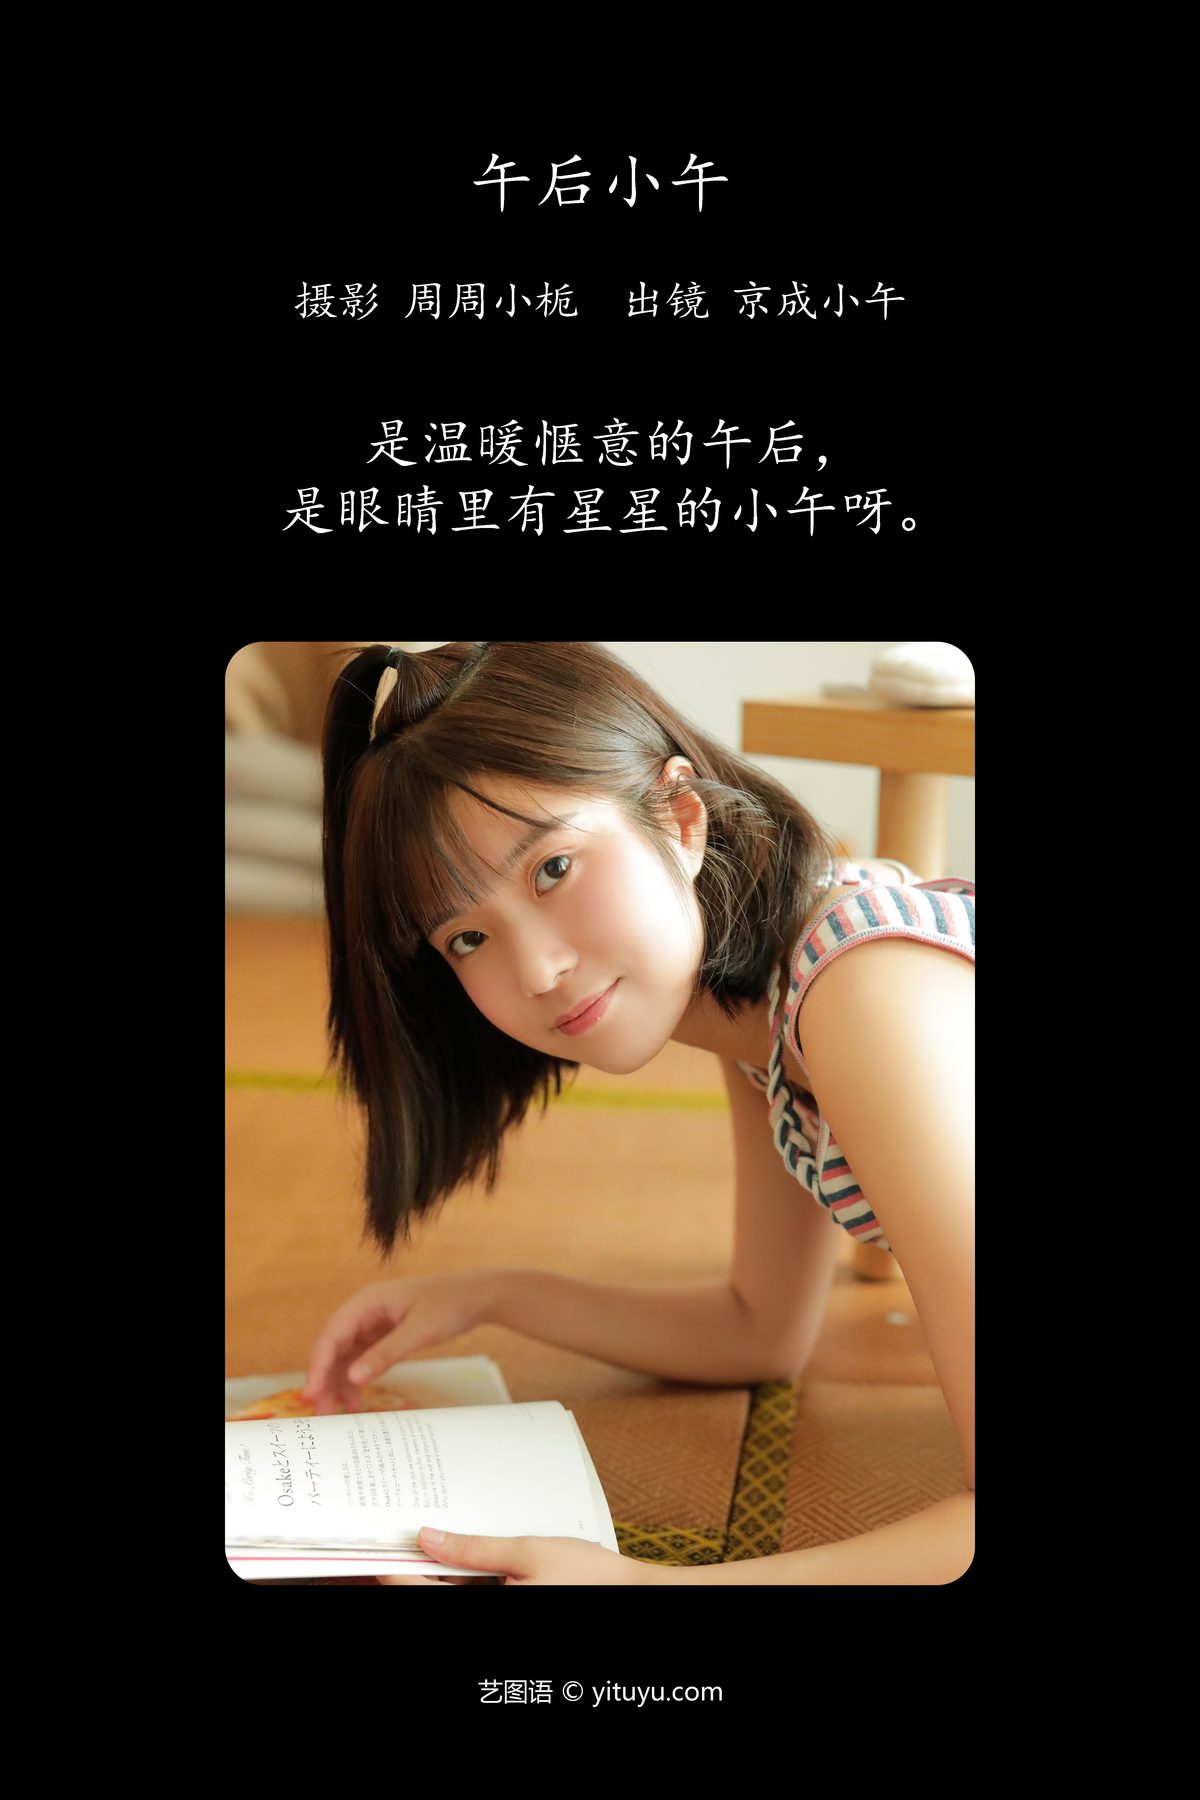 YiTuYu艺图语 Vol 5543 Jing Cheng Xiao Wu 0002 9355803276.jpg